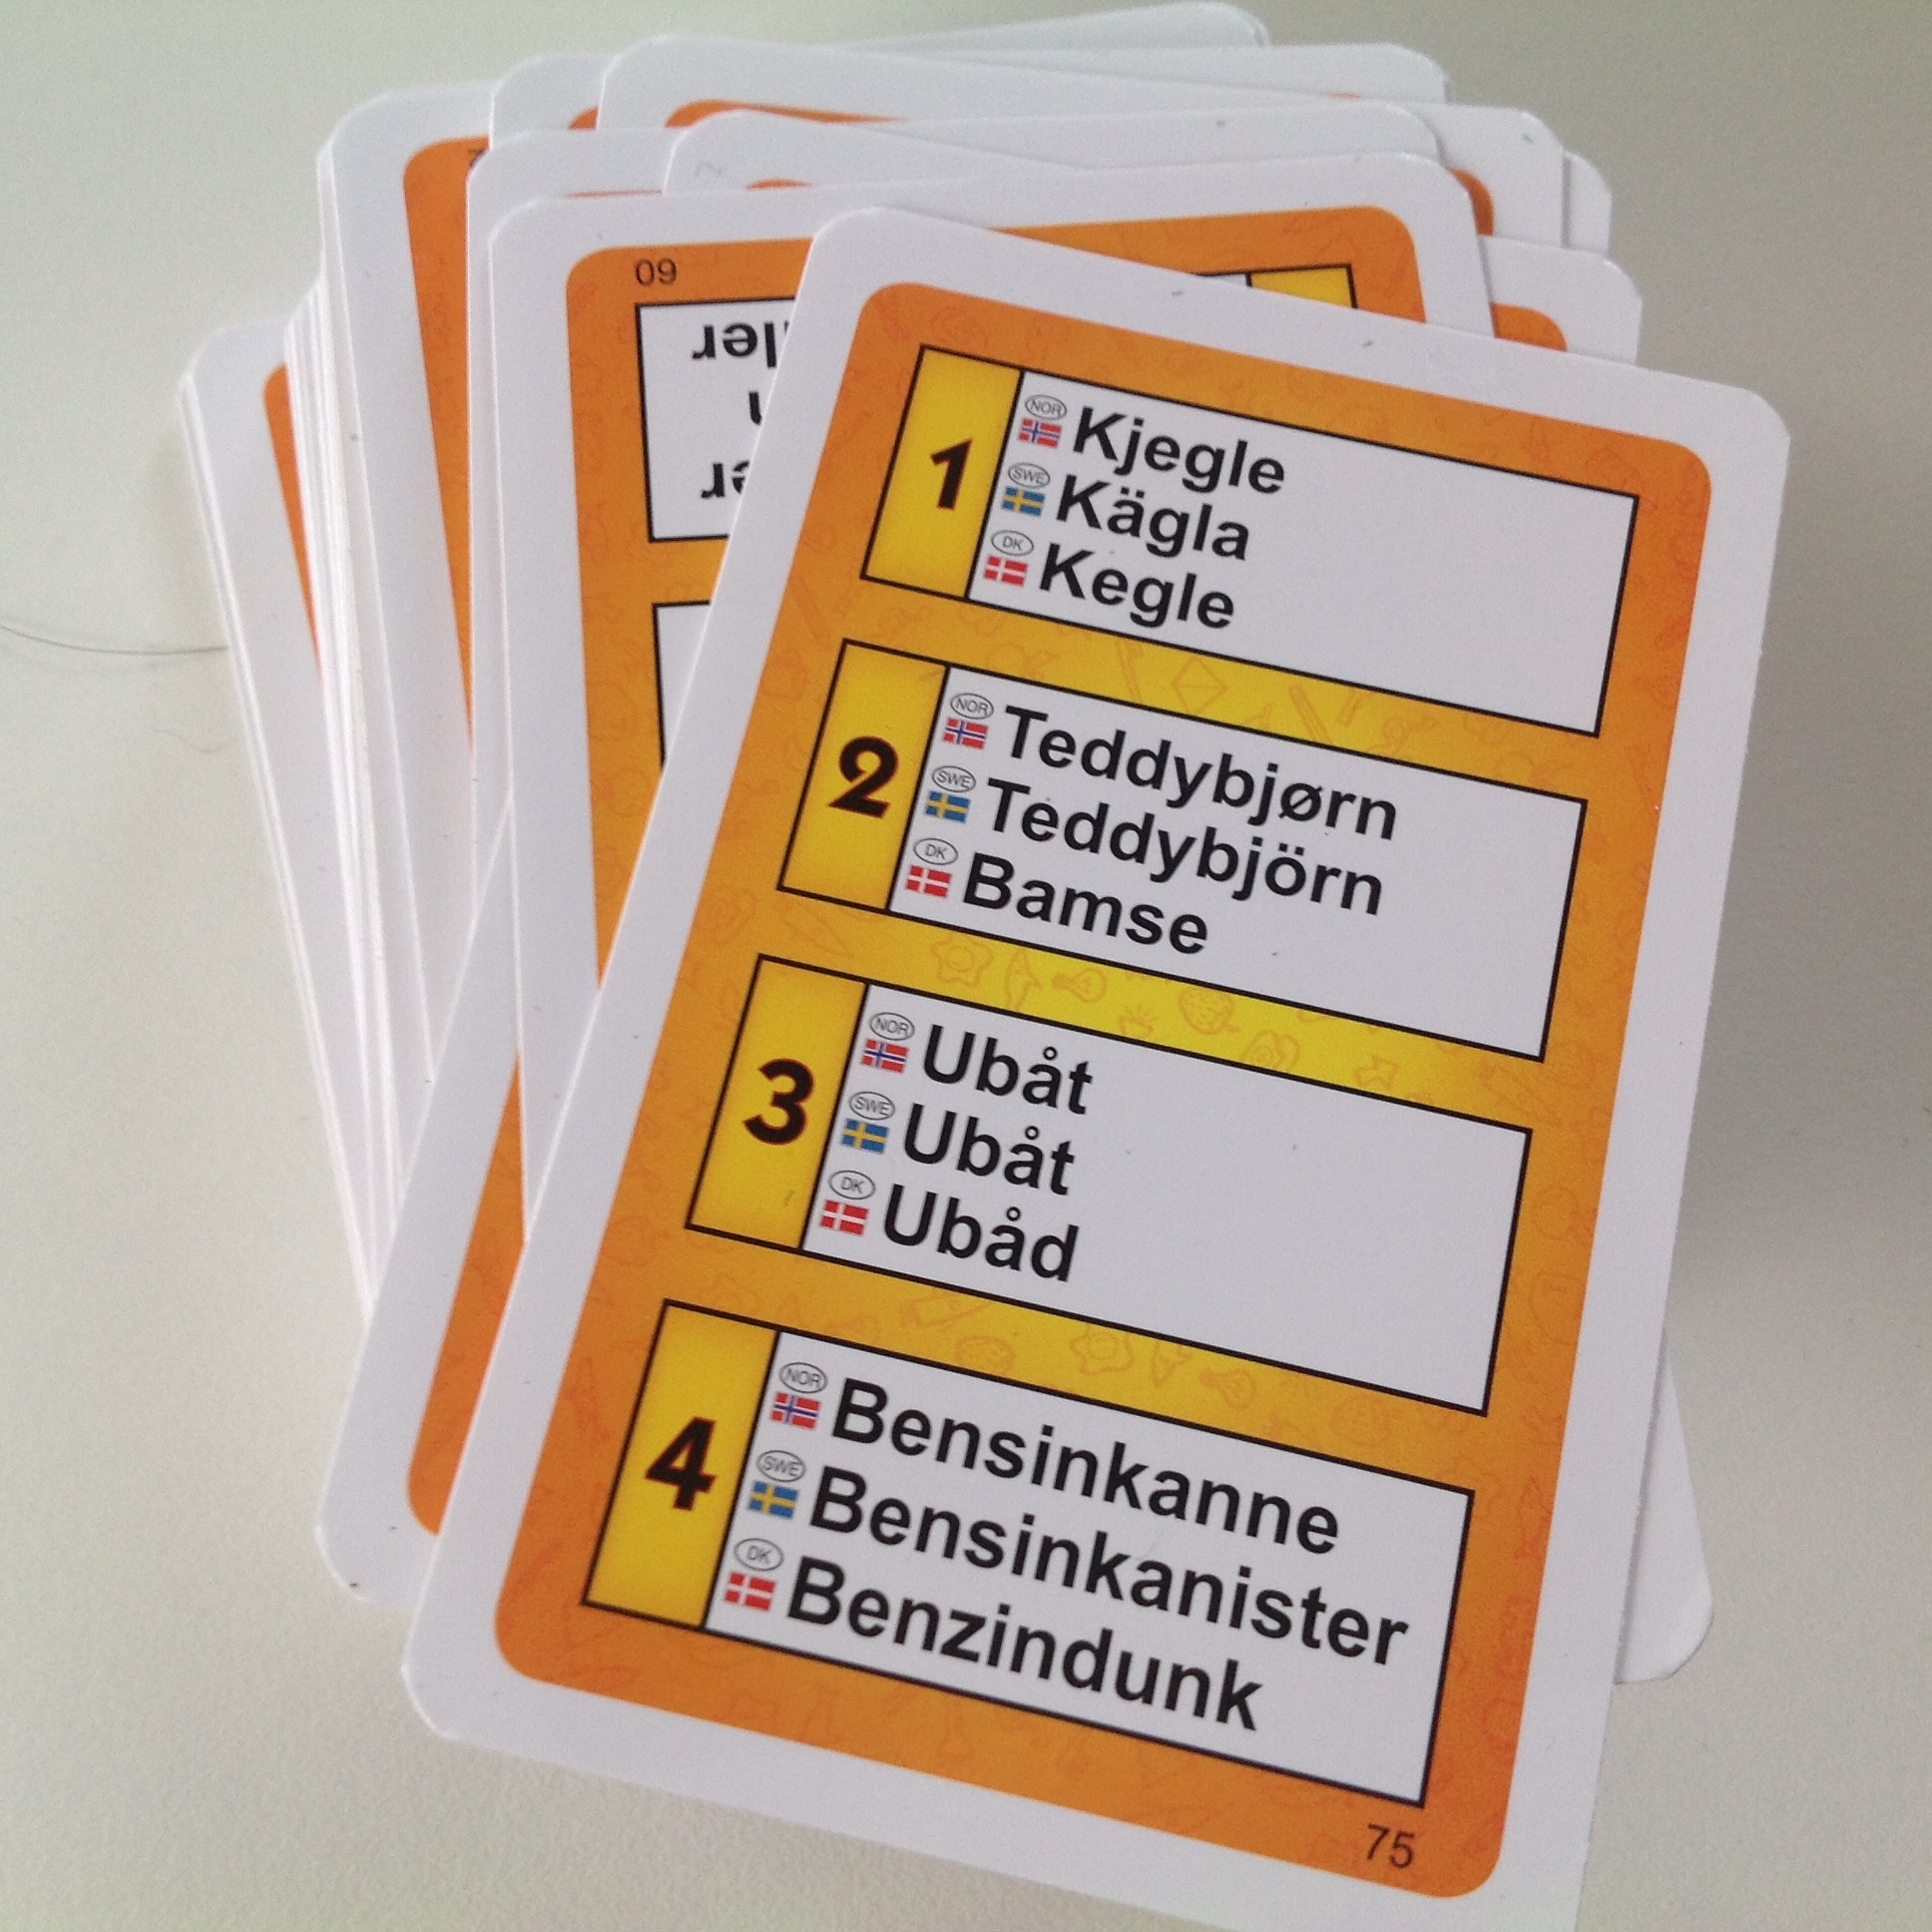 Hvert kort indeholder fire ord (på norsk, svensk og dansk, som den aktive spiller skal tegne og de øvrige spiller gætte.